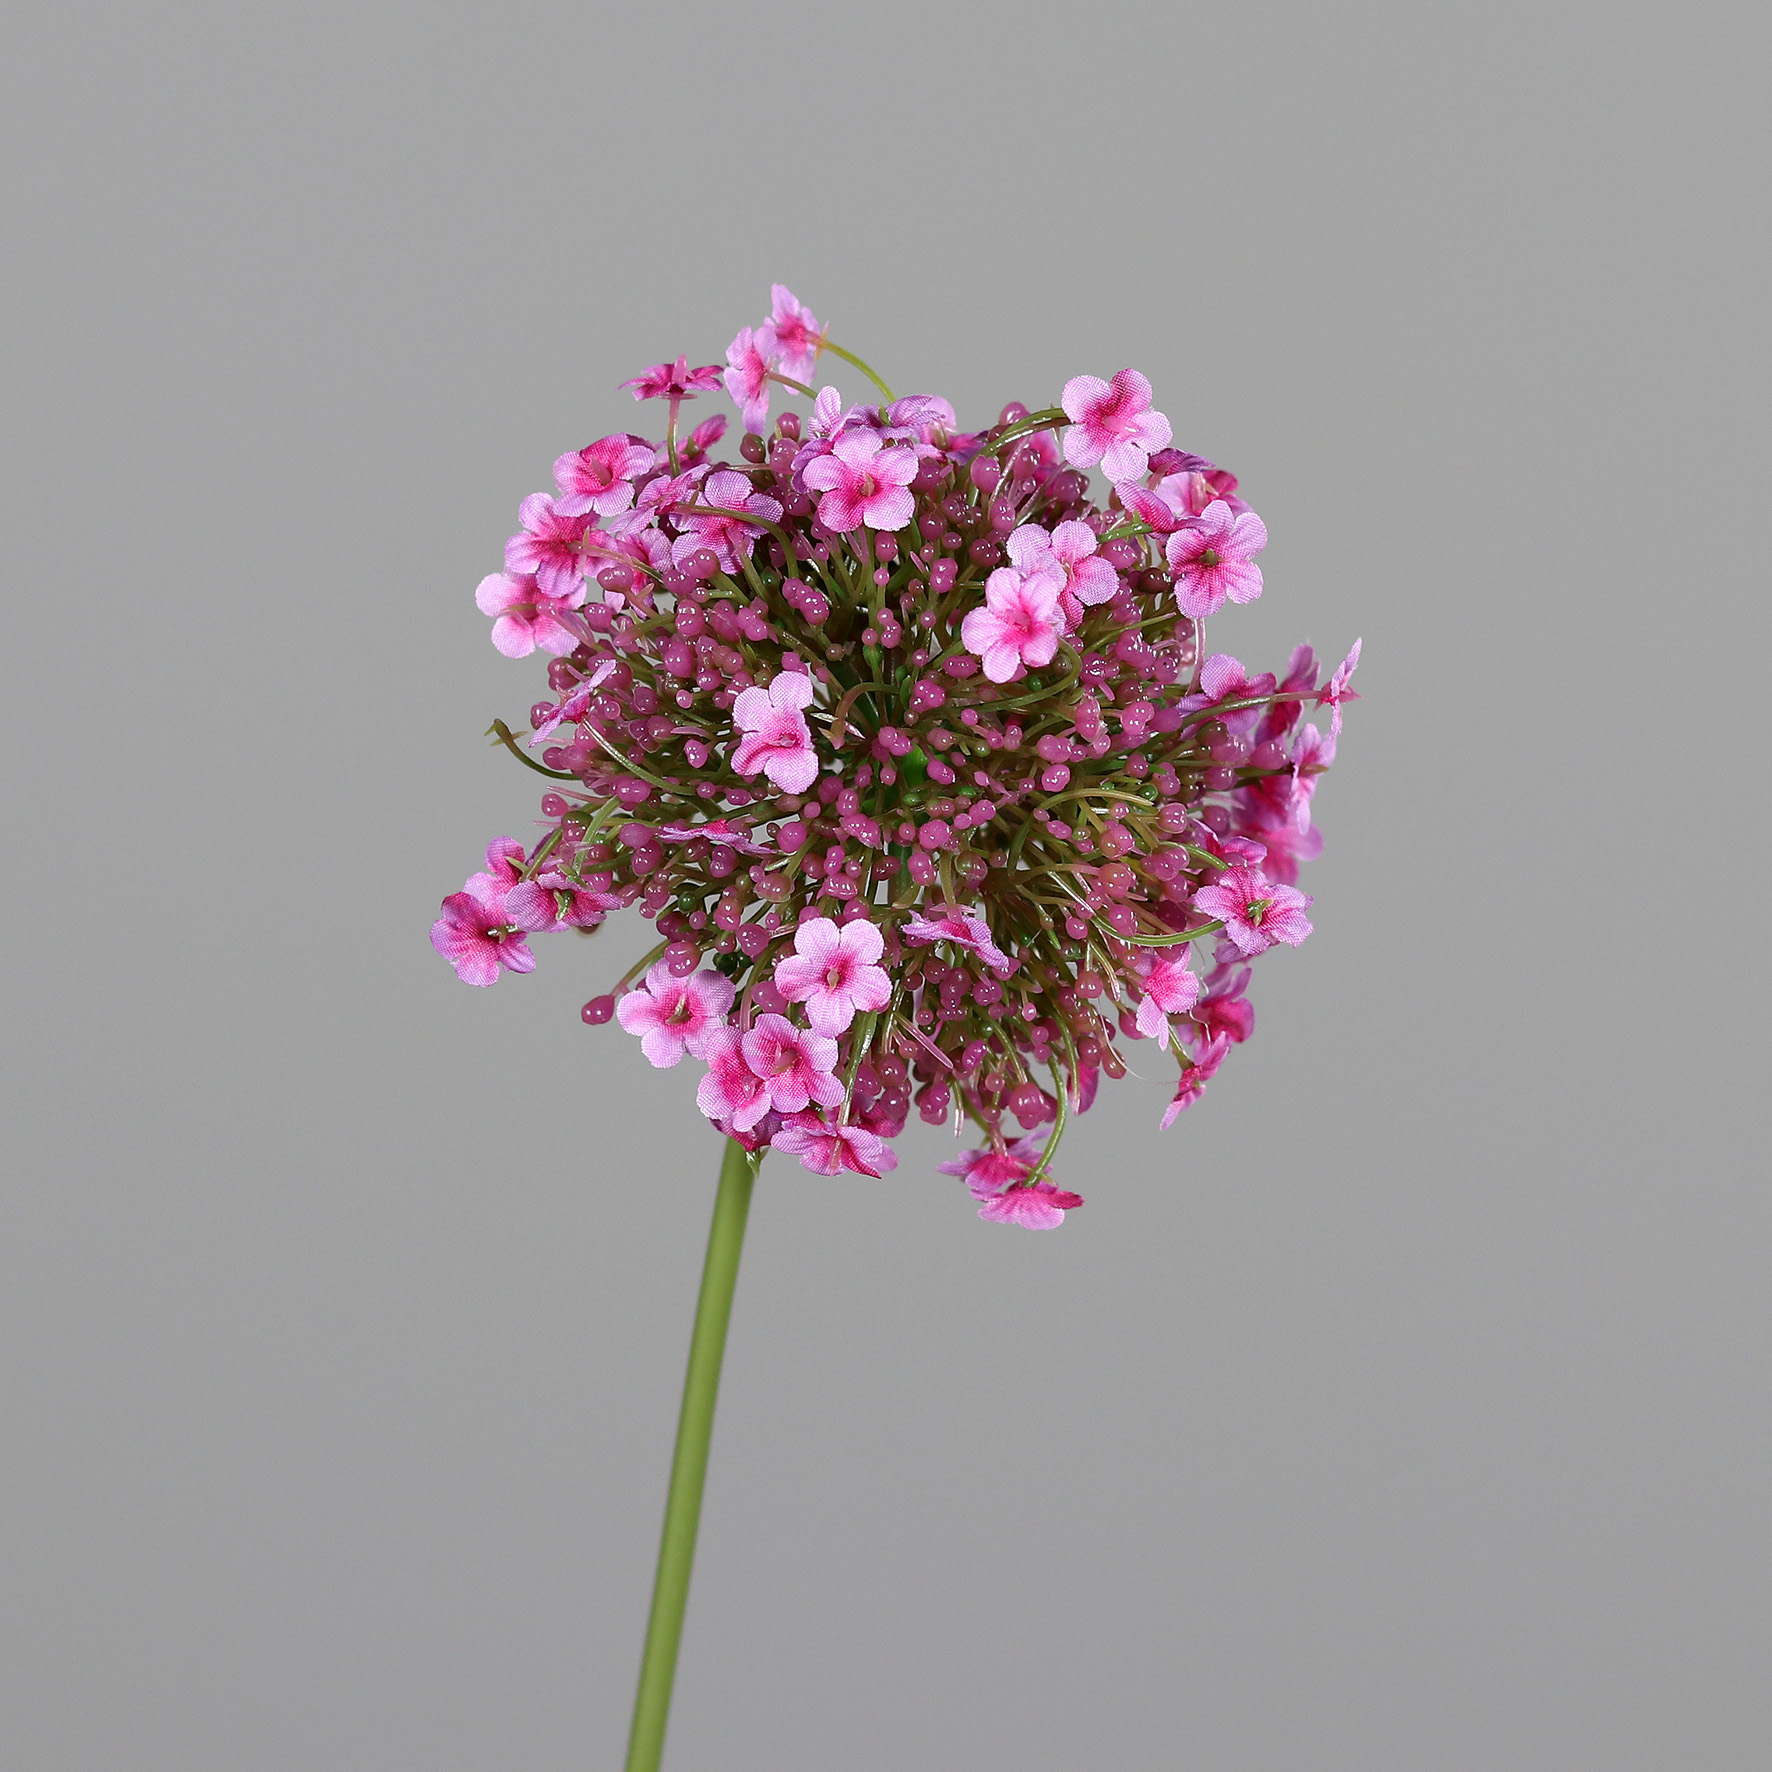 Alliumkugel mit Blüten 46cm rosa-pink DP Kunstlbumen künstliche Blumen Allium Lauch